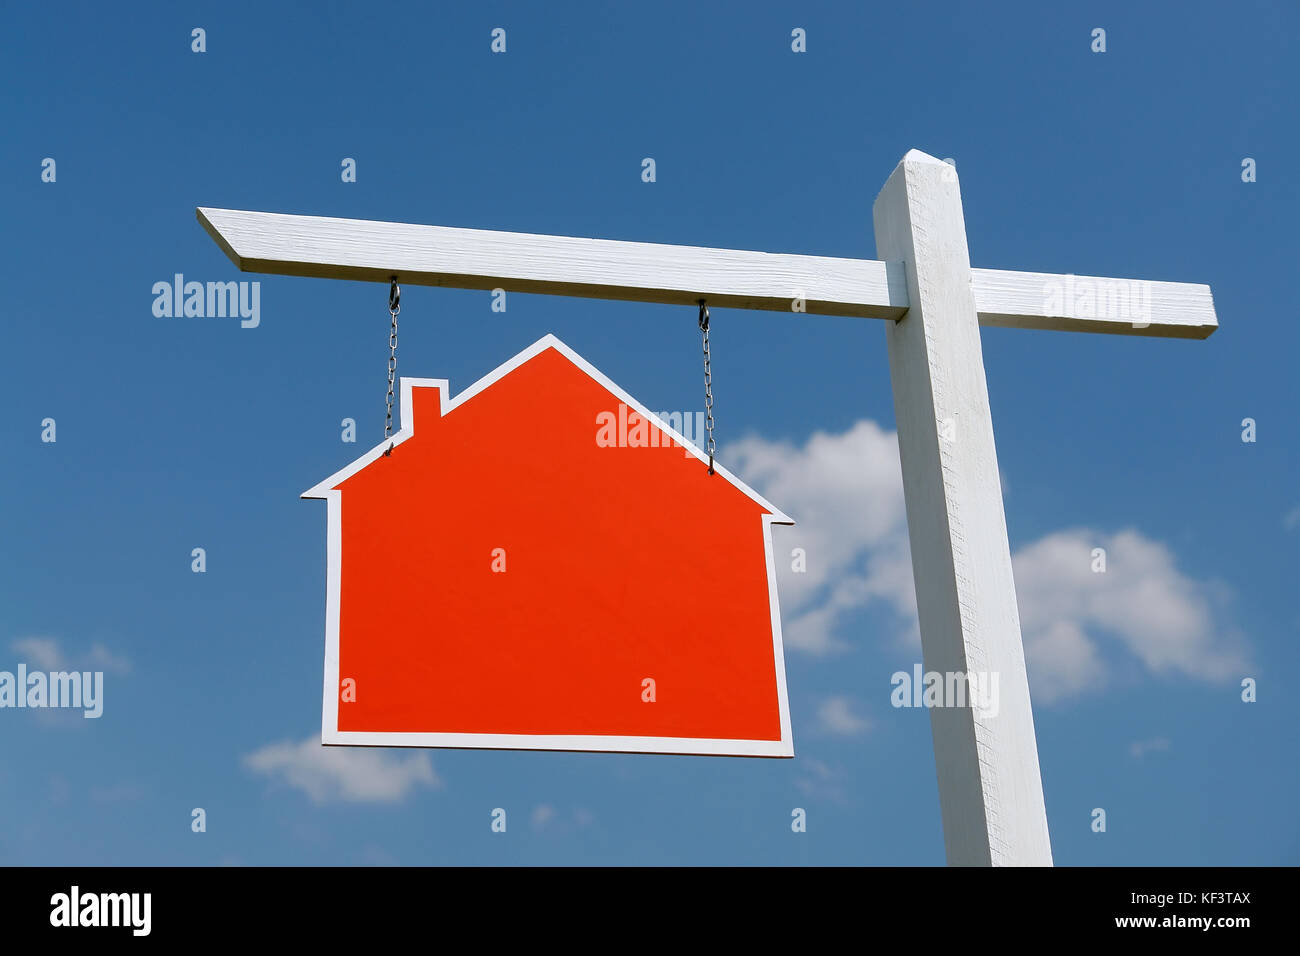 Weiß hölzernen Pfosten mit leeren roten Haus-förmiges Schild über blauen Himmel Stockfoto